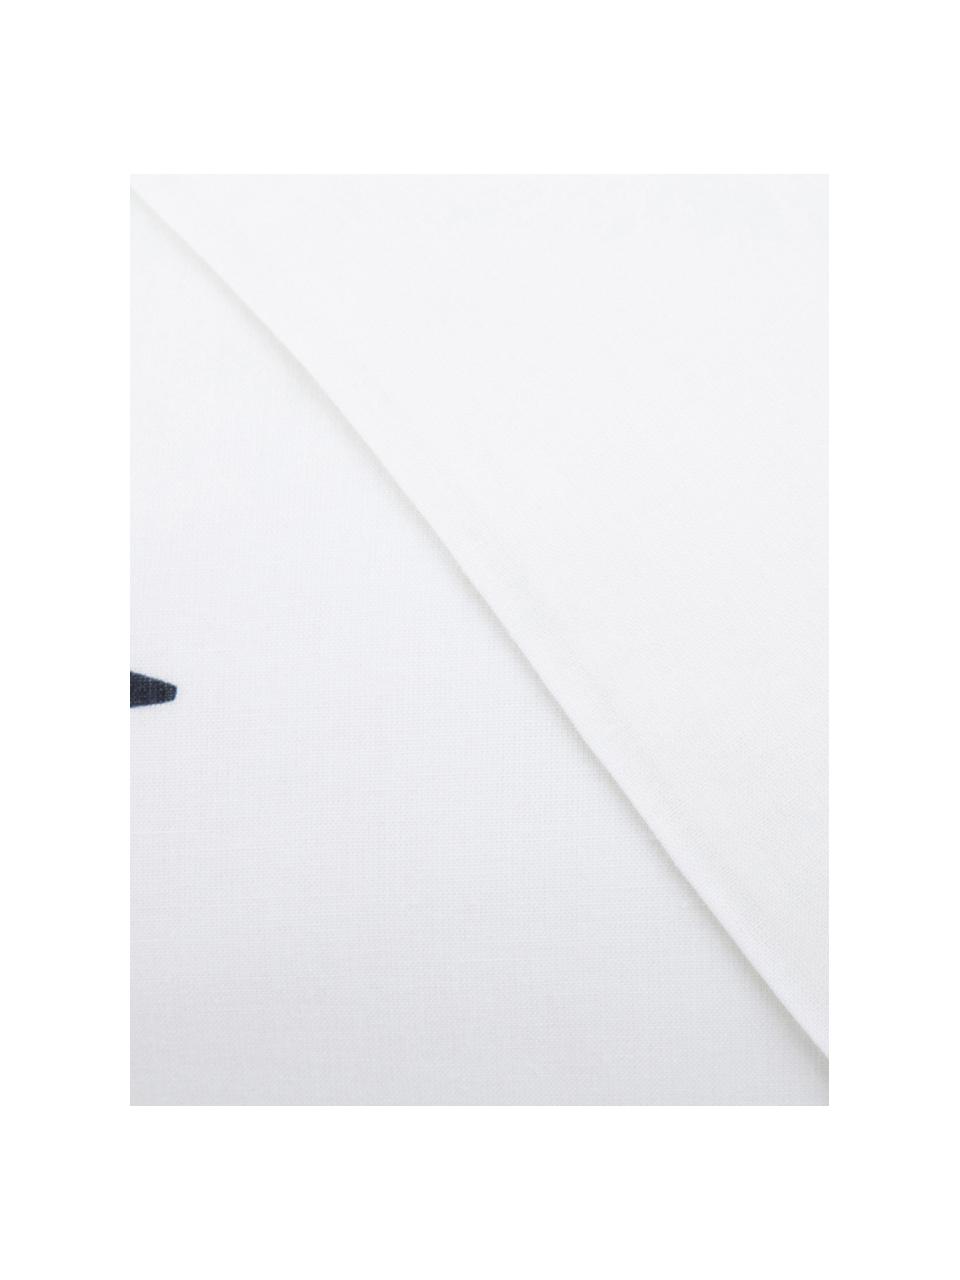 Parure copripiumino reversibile in cotone Trip, Cotone, Bianco, nero, 220 x 240 cm + 2 federe 50 x 75 cm